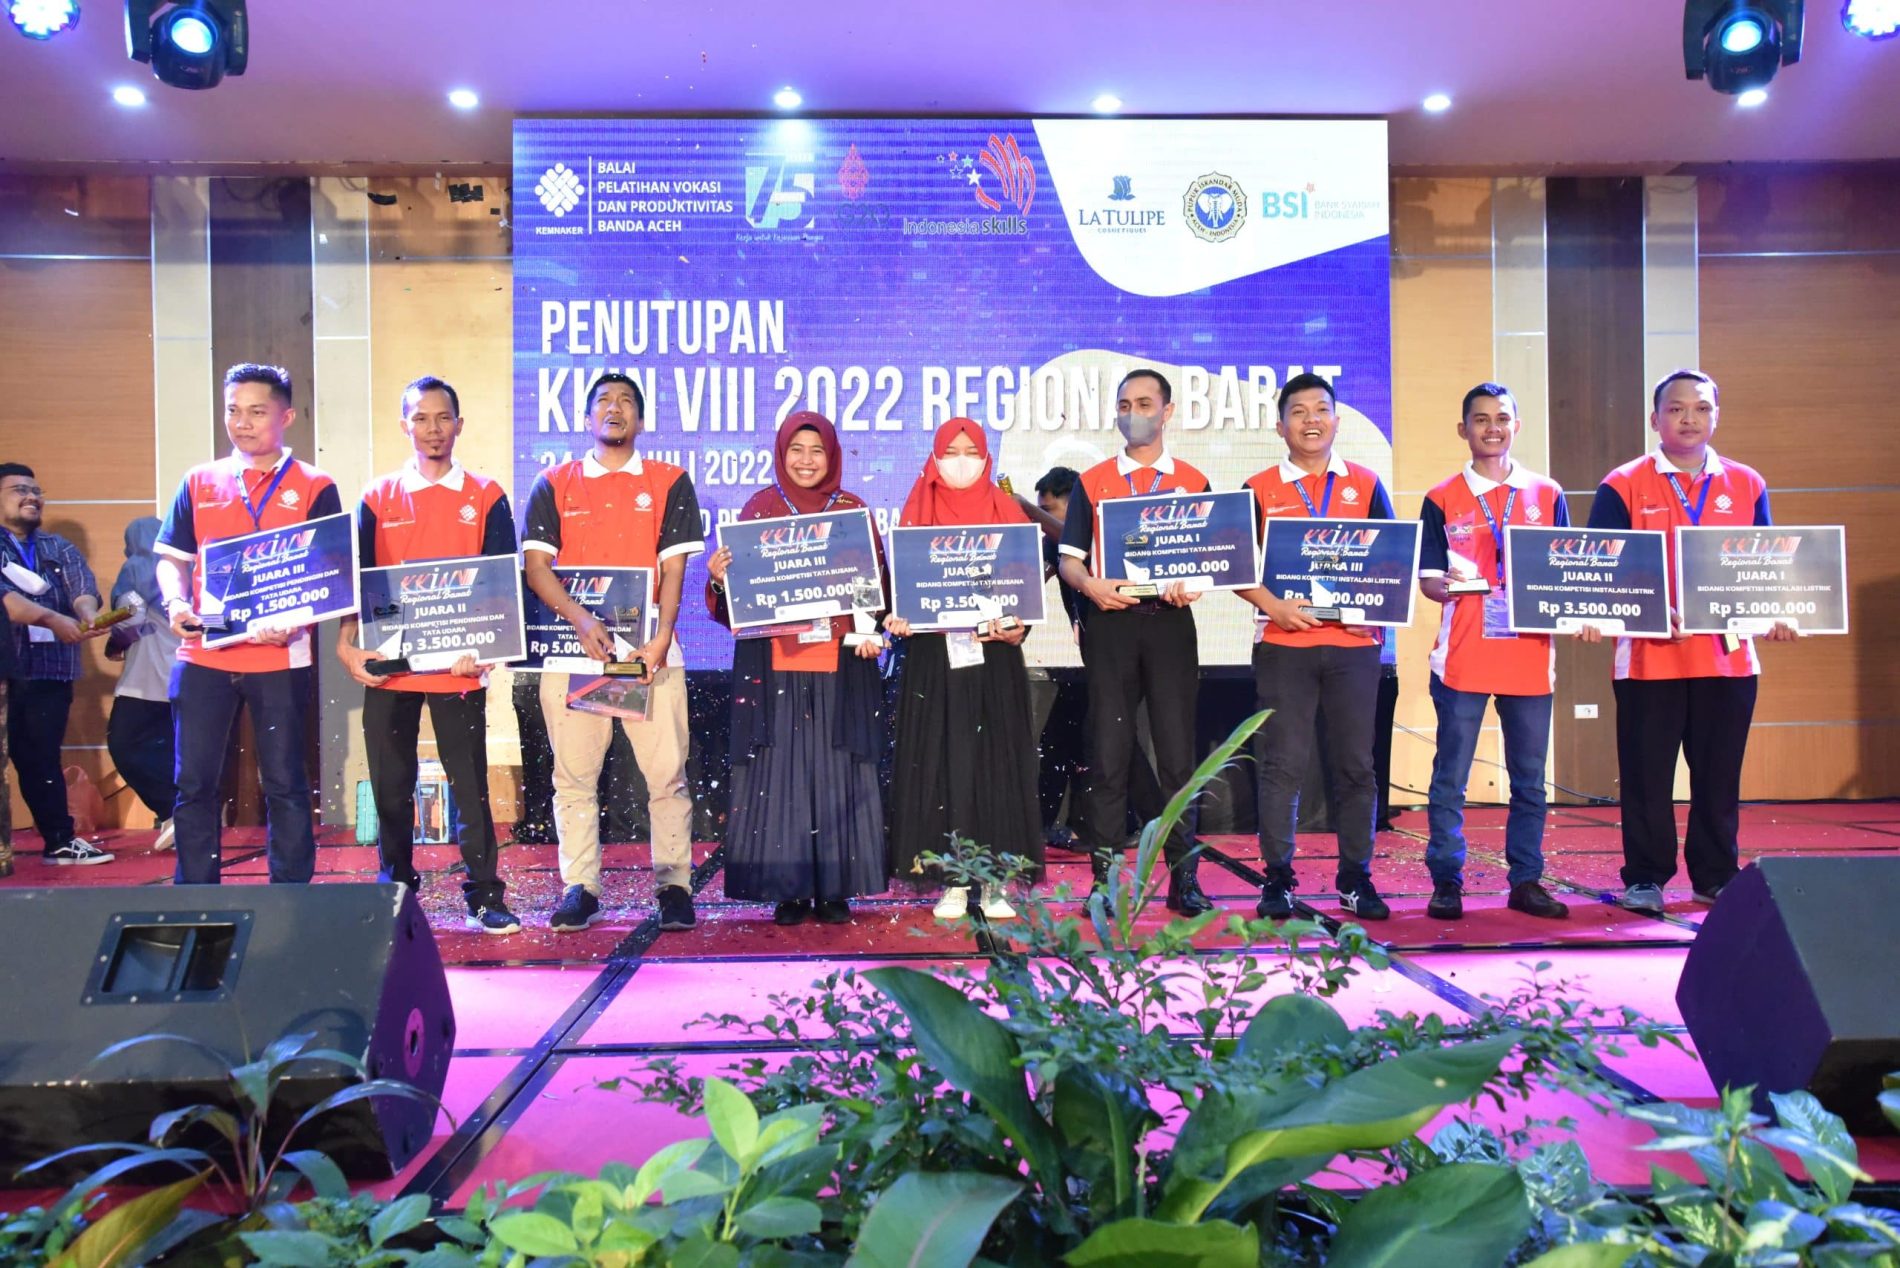 Para Juara KKIN VIII Regional Wilayah Barat Siap Berkompetisi Pada KKIN VIII Tingkat Nasional